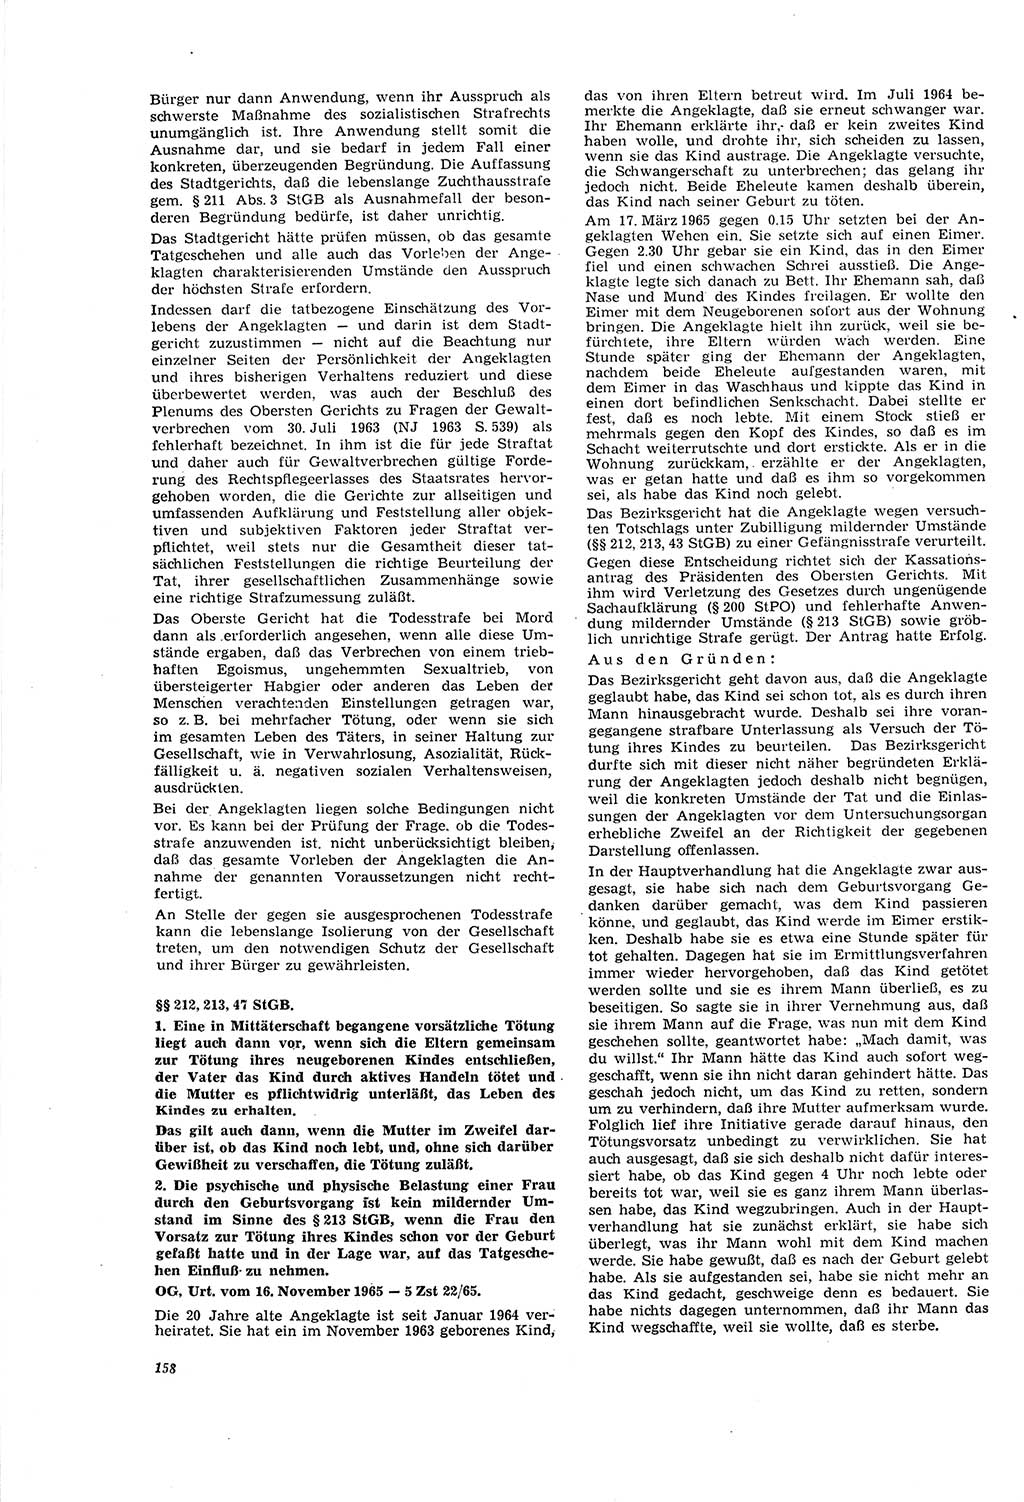 Neue Justiz (NJ), Zeitschrift für Recht und Rechtswissenschaft [Deutsche Demokratische Republik (DDR)], 20. Jahrgang 1966, Seite 158 (NJ DDR 1966, S. 158)